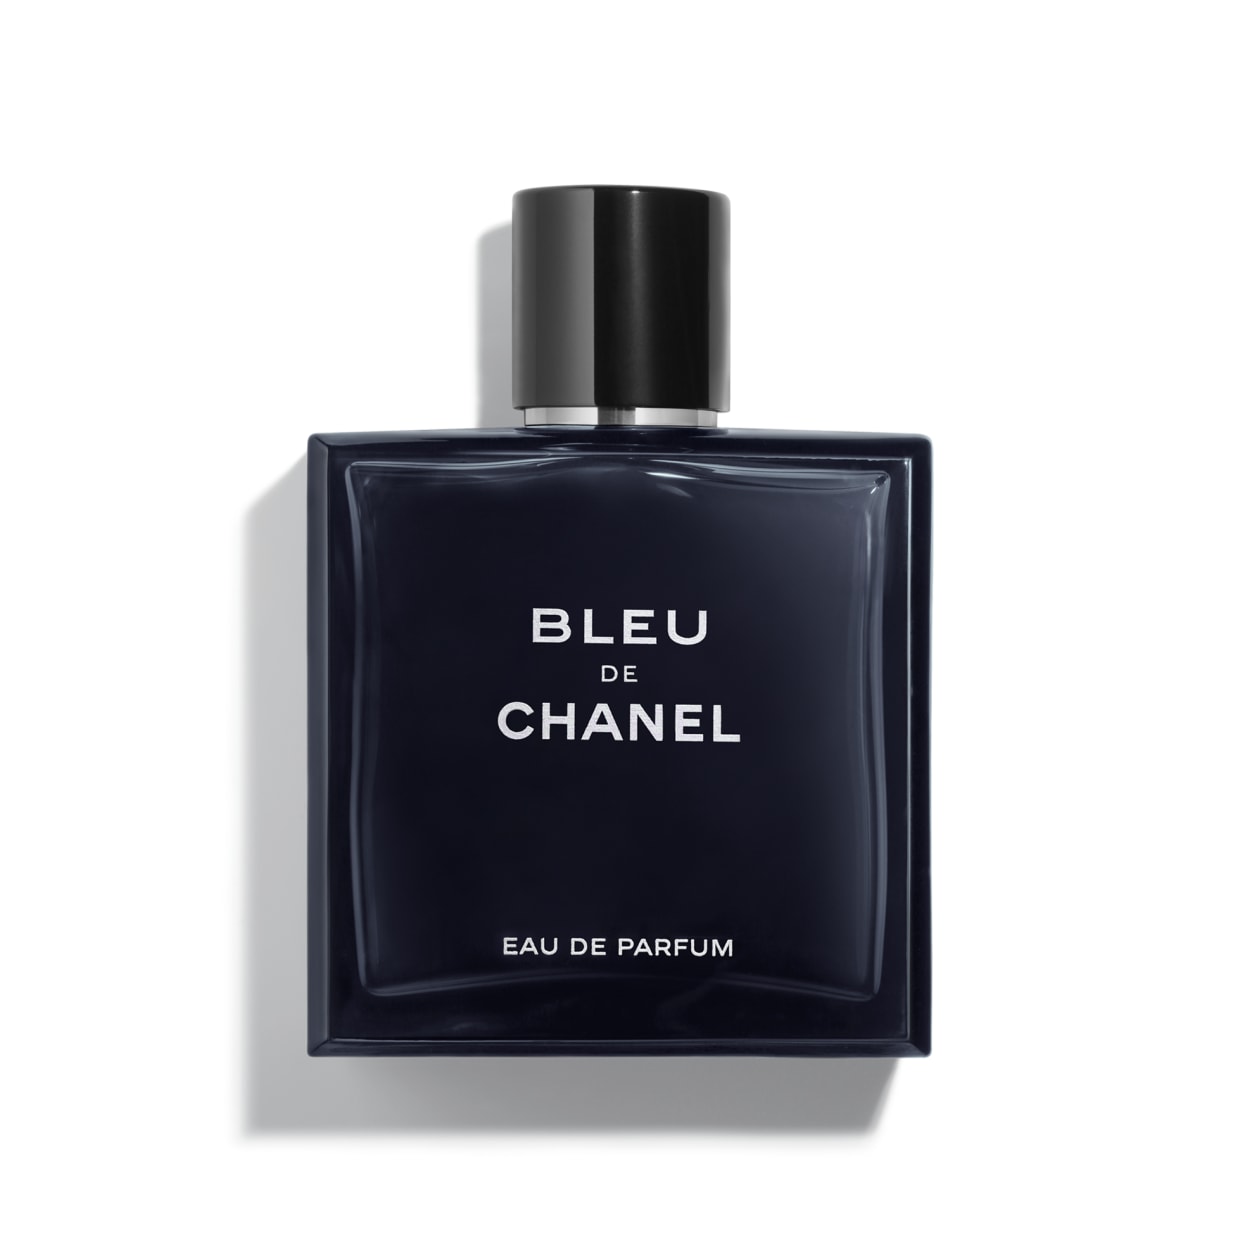 Bleu de Chanel Extrait de Parfum – Boujee Perfumes